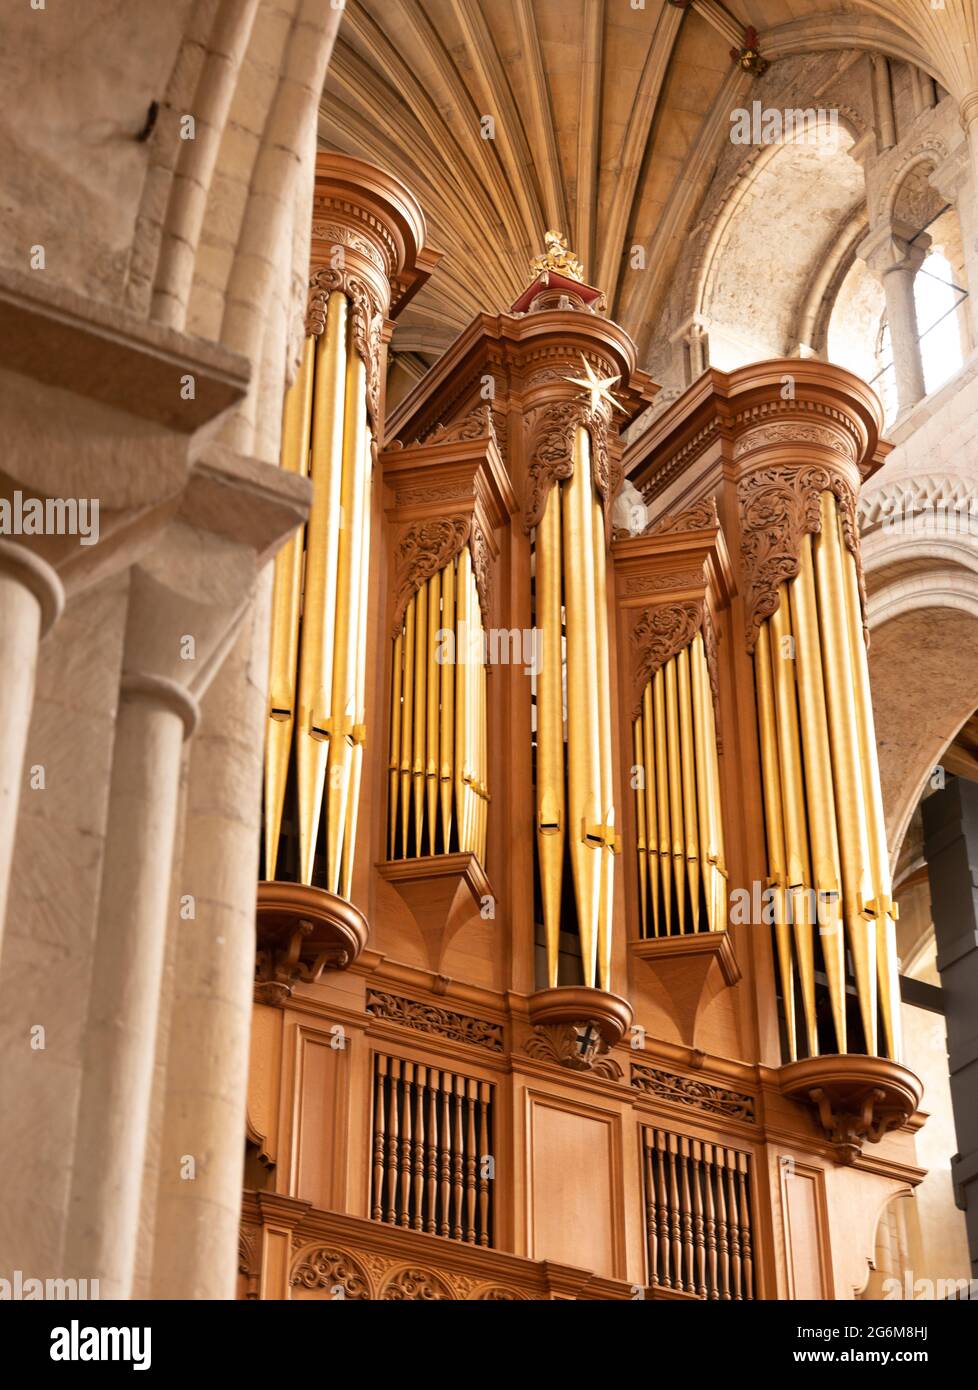 Organo presso la Cattedrale di Norwich, le cattedrali di Norwich sono uno dei più grandi organi a tubo in Inghilterra Foto Stock